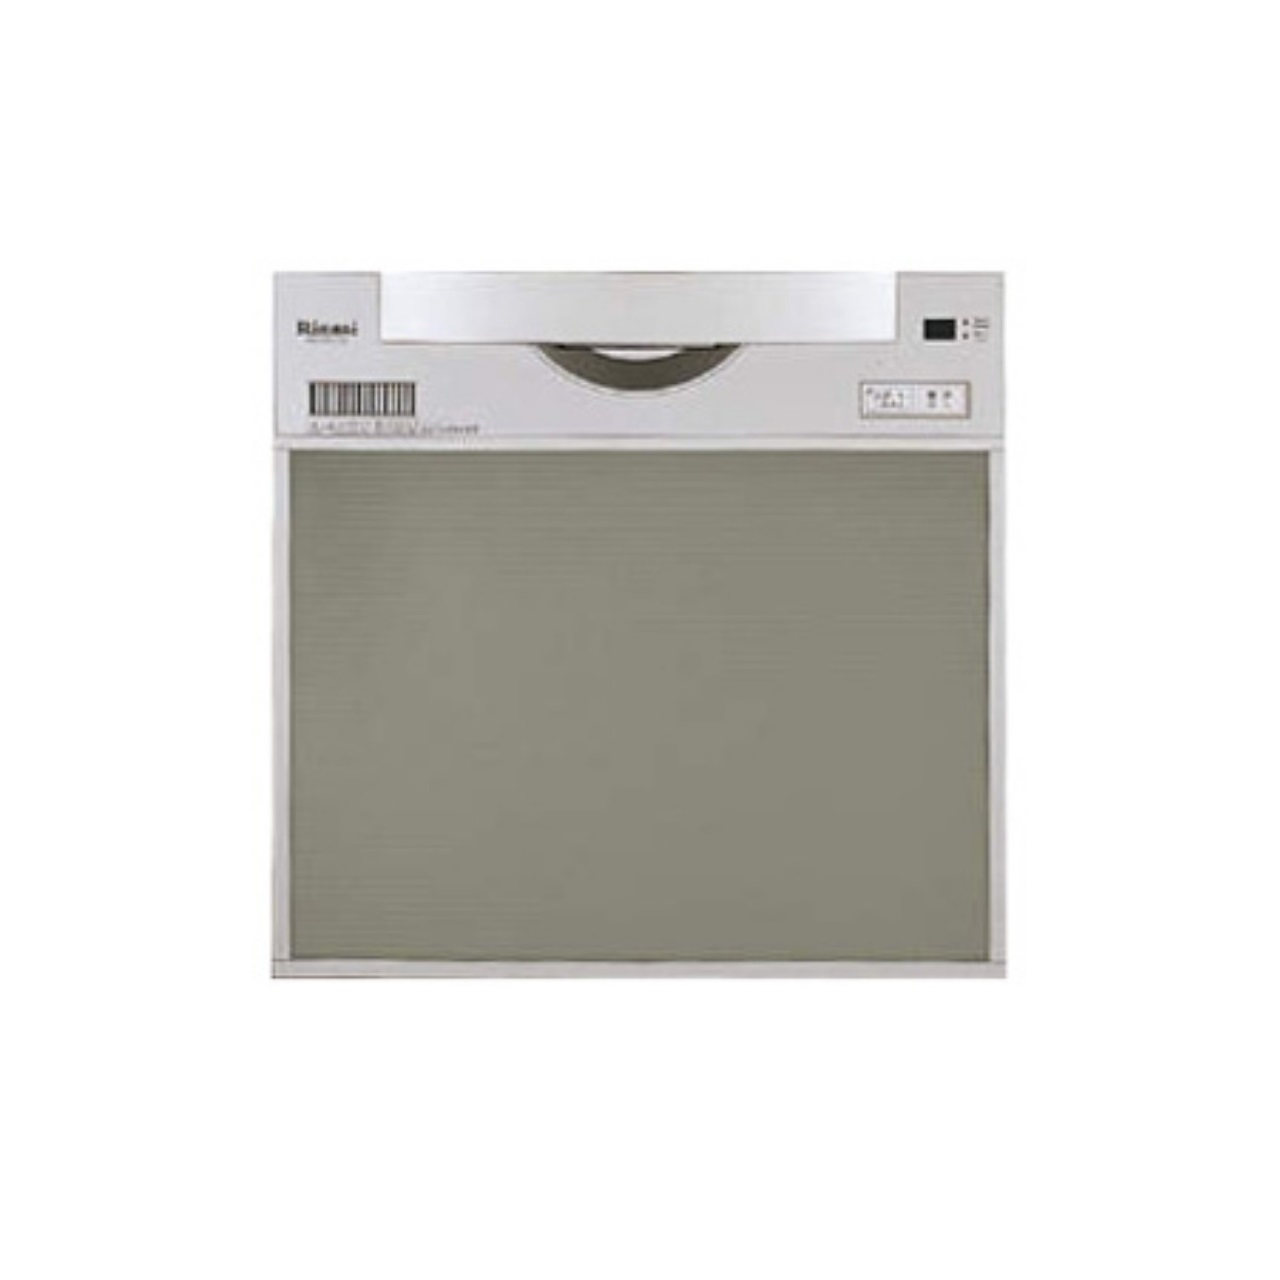 リンナイRSW-C401Cビルトイン食器洗い乾燥機